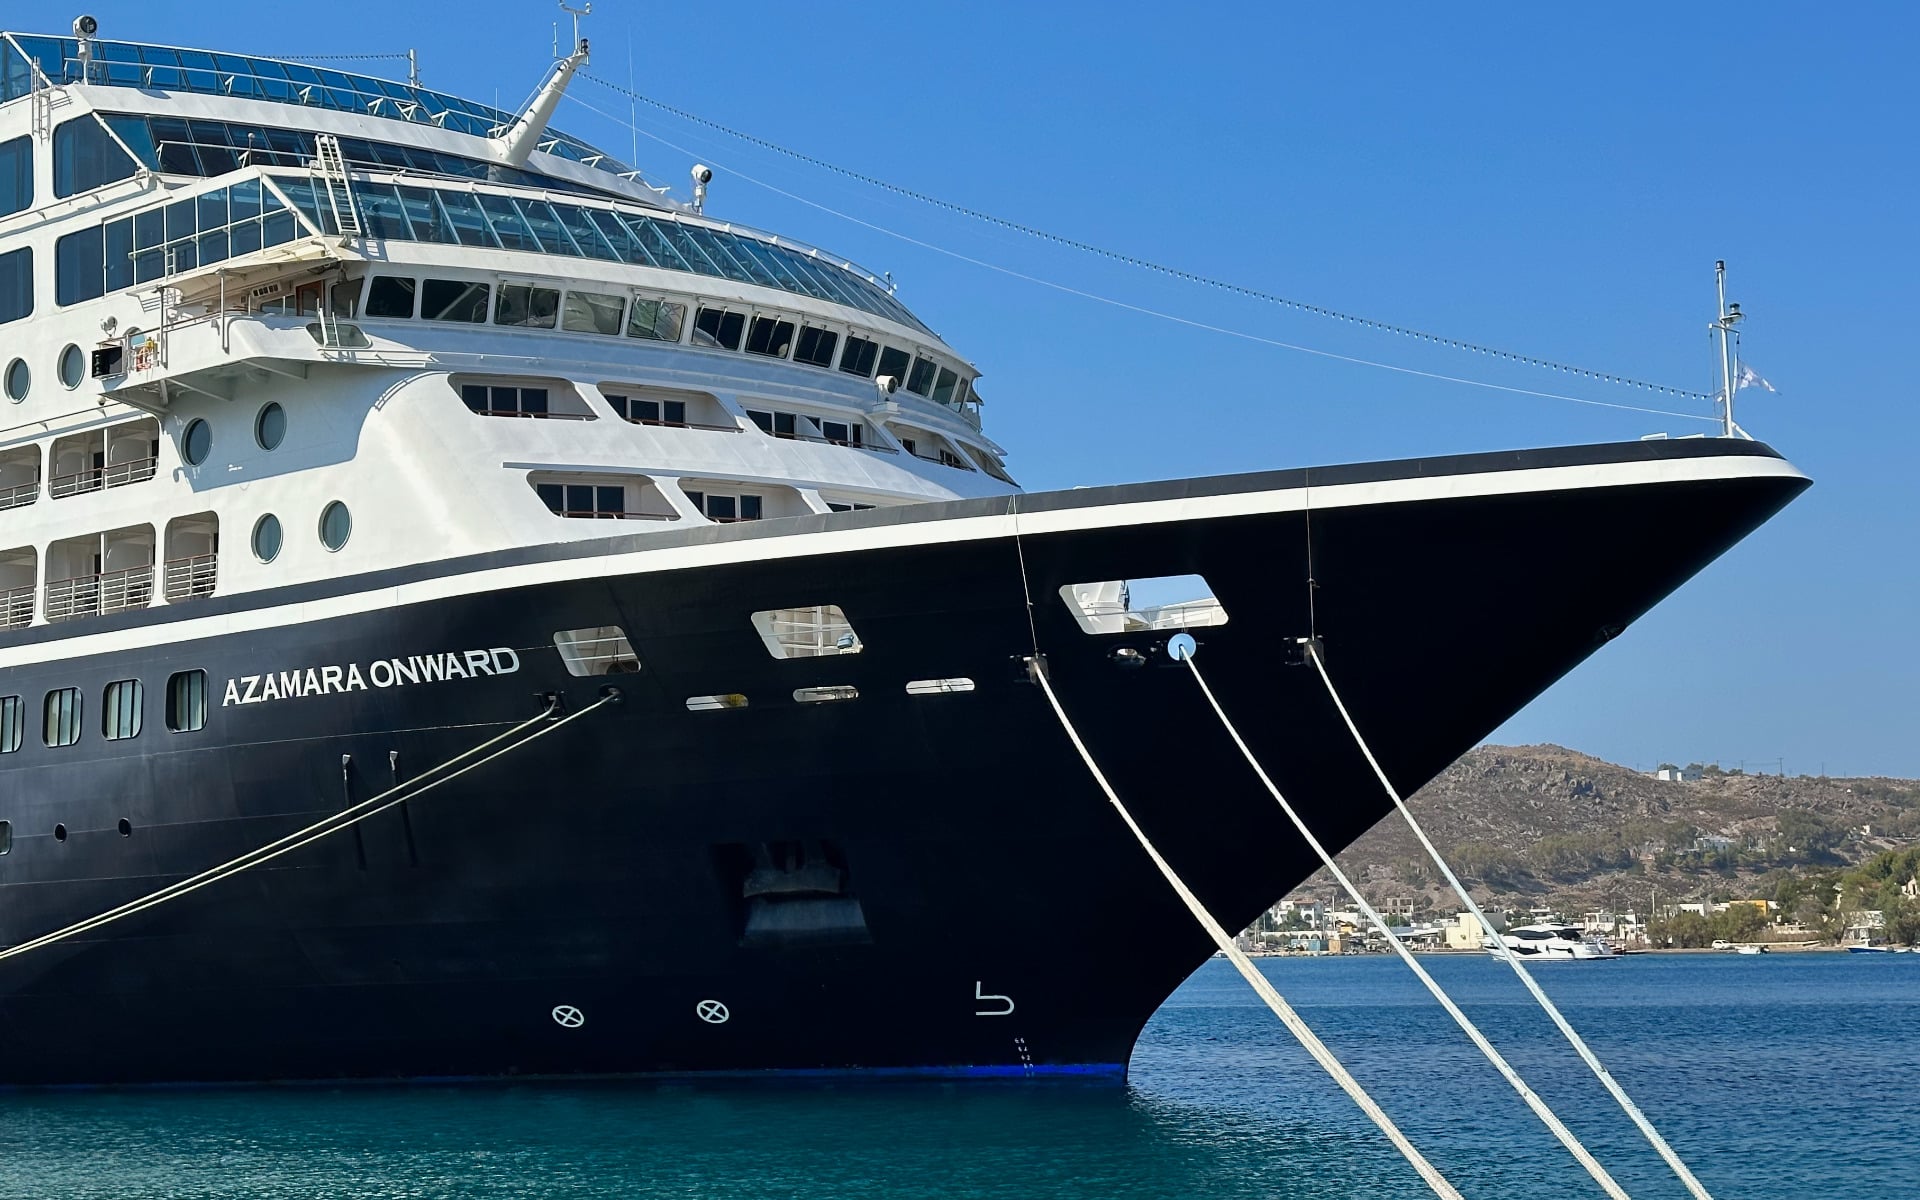 The Azamara Onward cruise ship in Patmos, Greece.